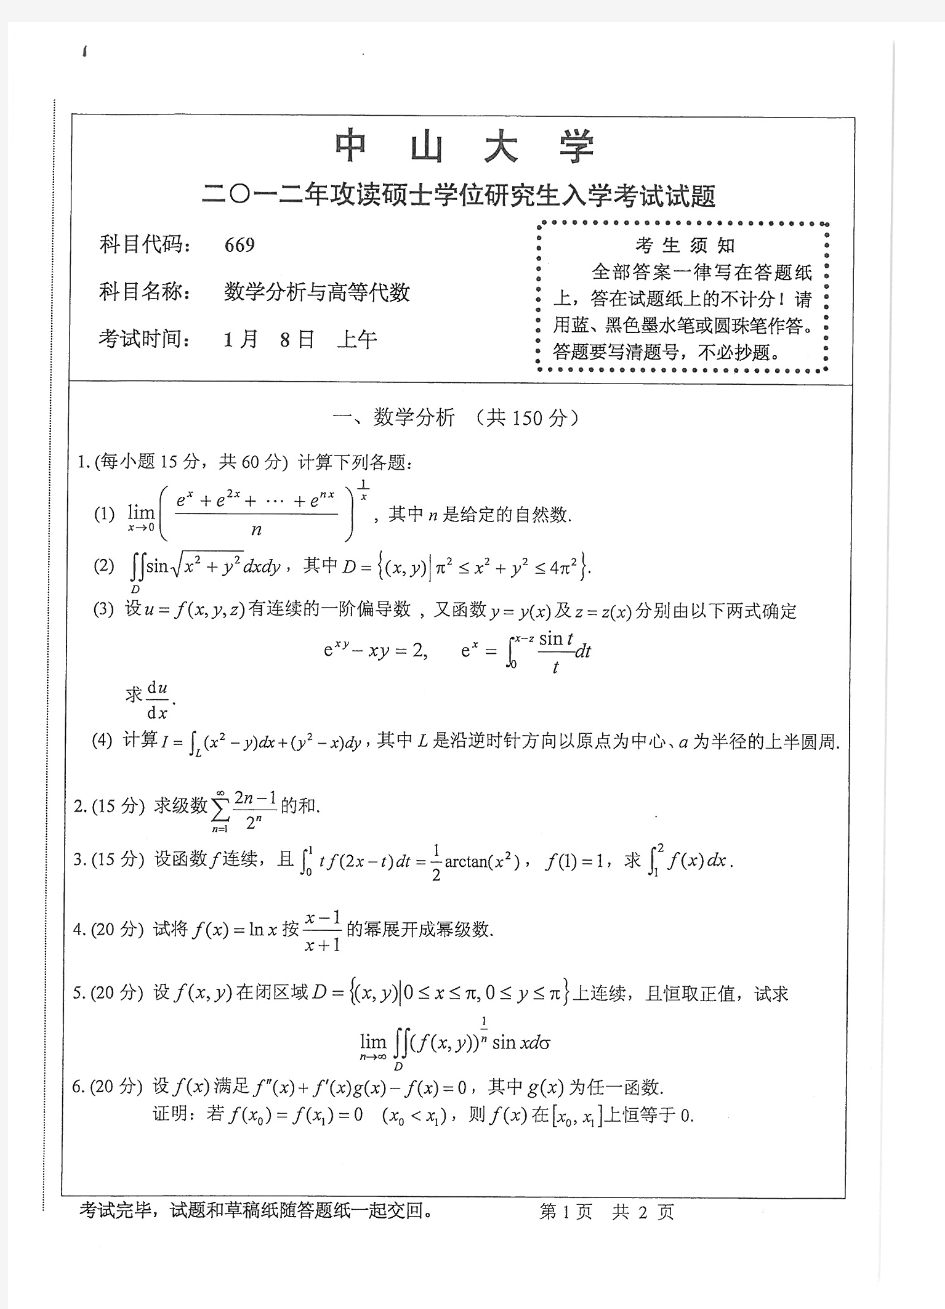 中山大学2012年数学分析高等代数考研试题